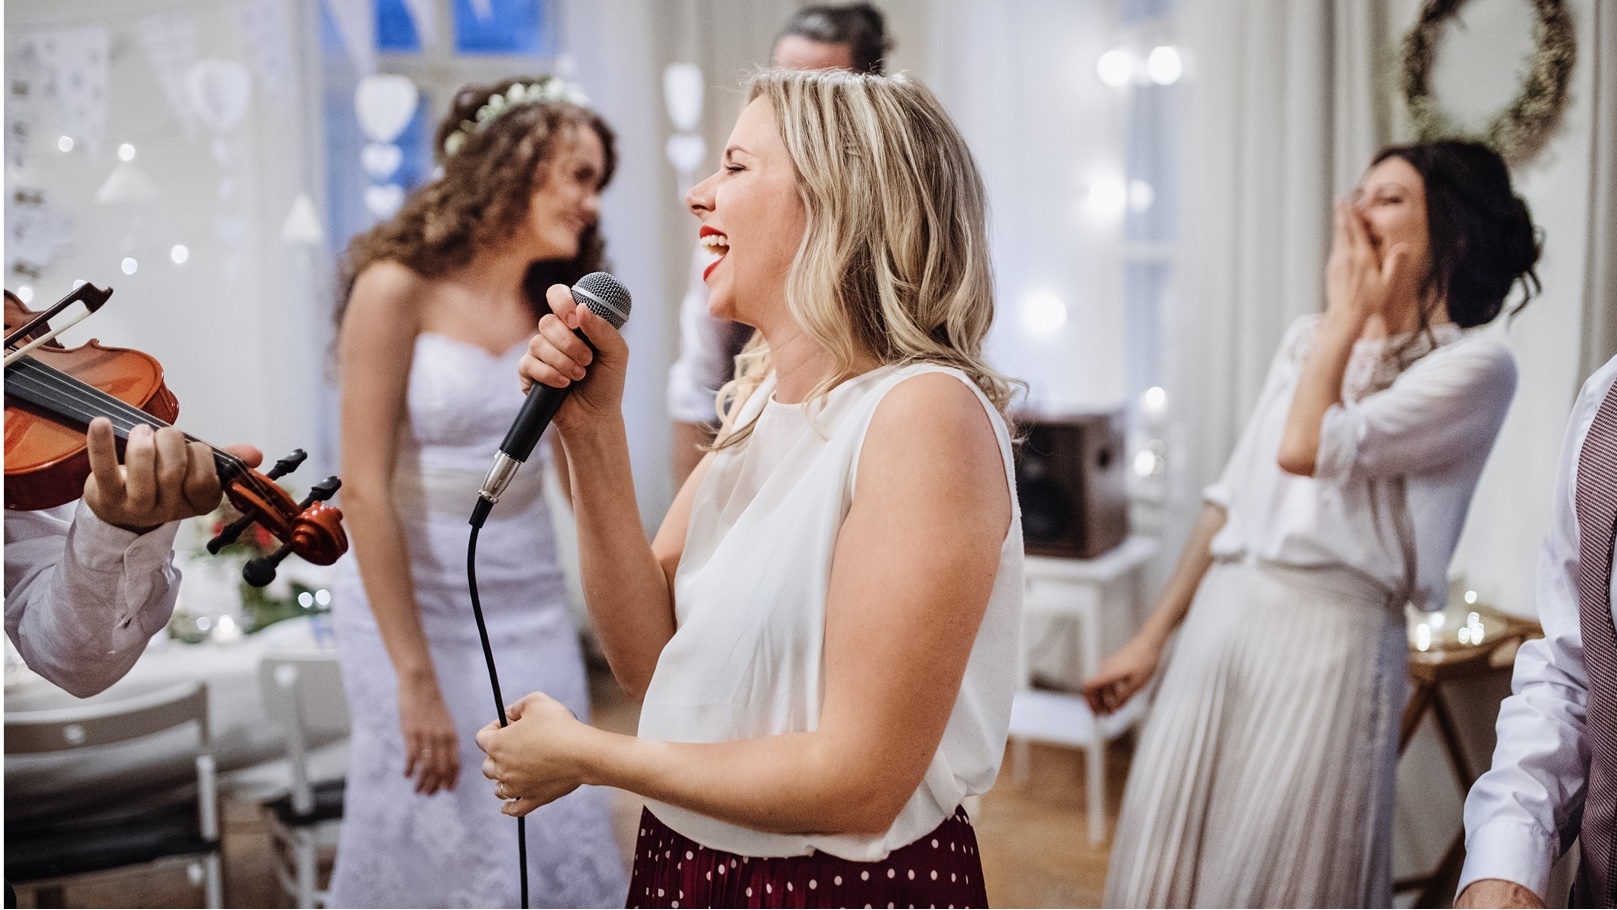 a-young-woman-singing-on-a-wedding-reception-brid-2021-08-26-12-09-29-utc